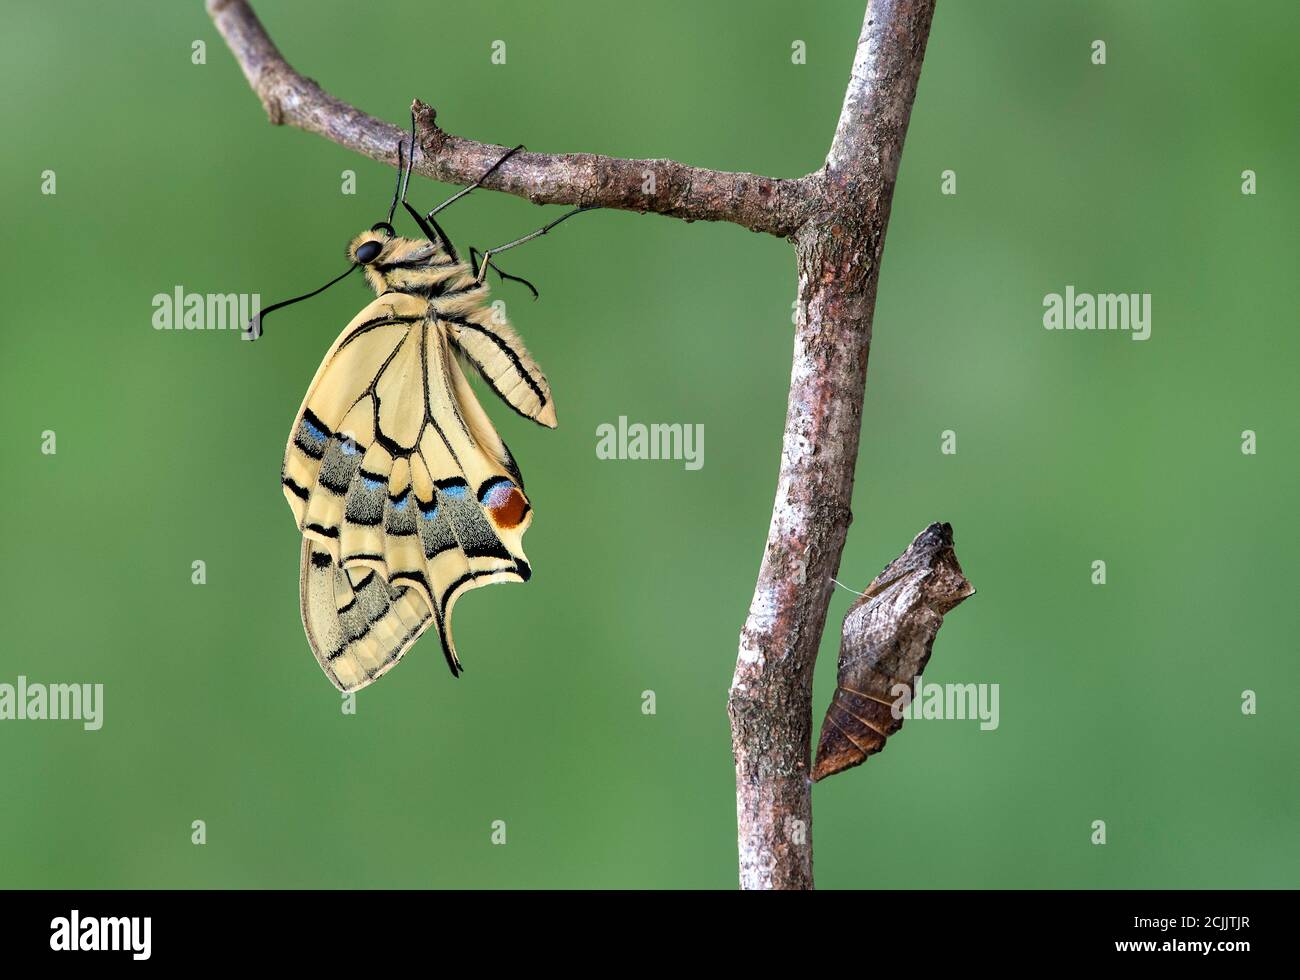 Coda di rondine del Vecchio mondo appena schiusa (Papilio machaon) oltre alla sua conchiglia pupa vuota, la Svizzera Foto Stock